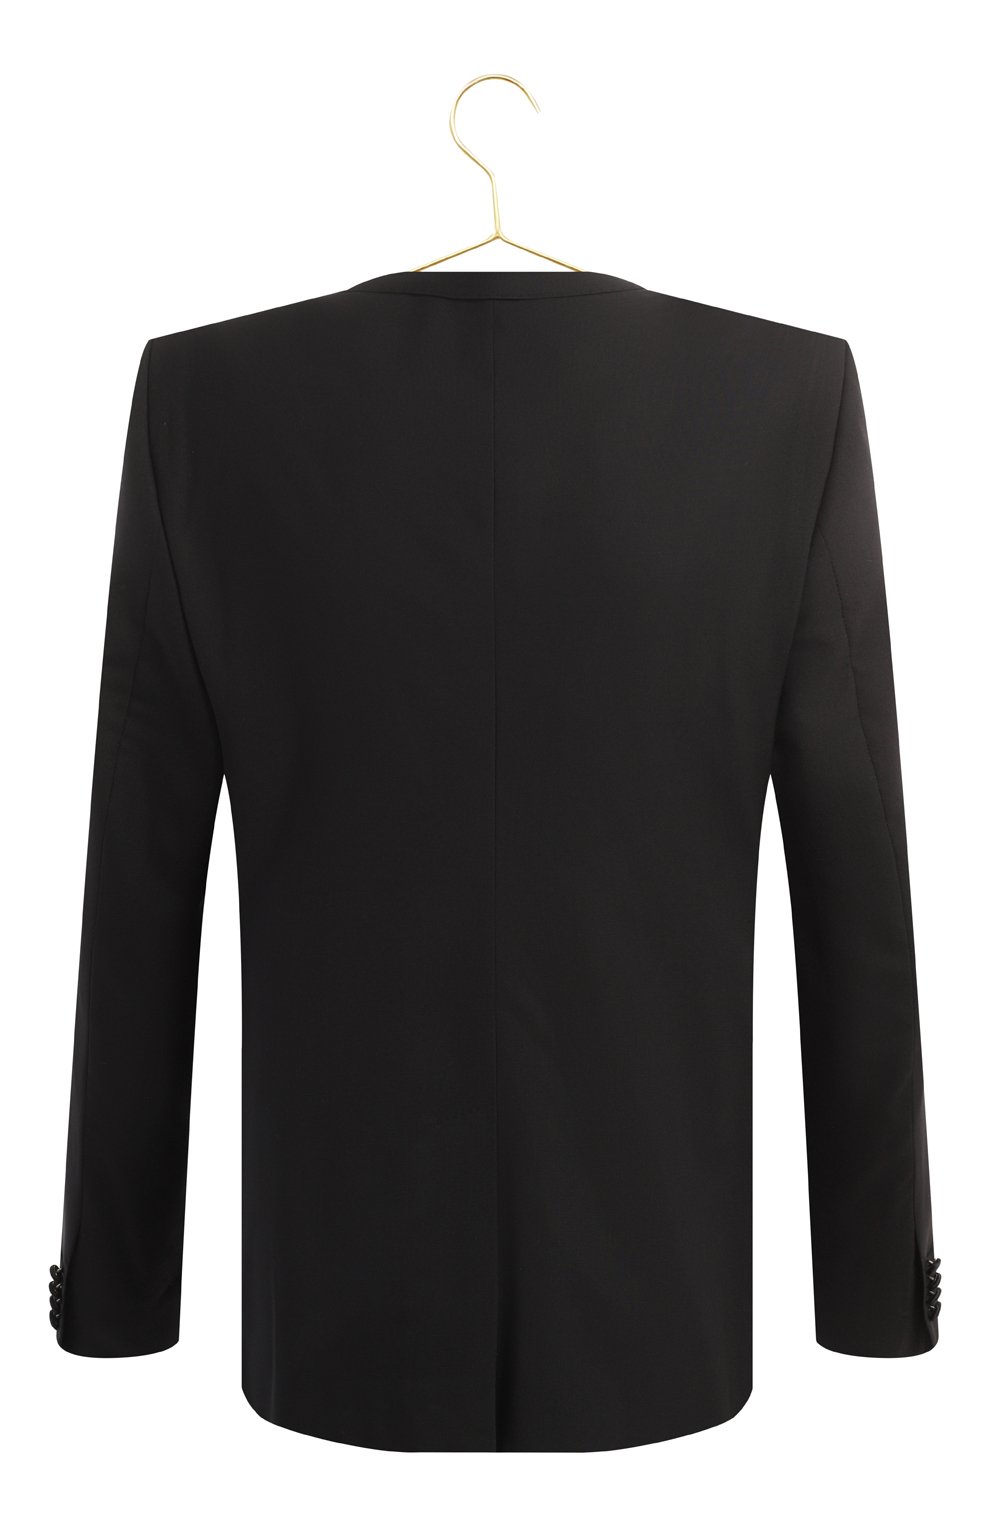 Пиджак из шерсти и шелка | Dolce & Gabbana | Чёрный - 2